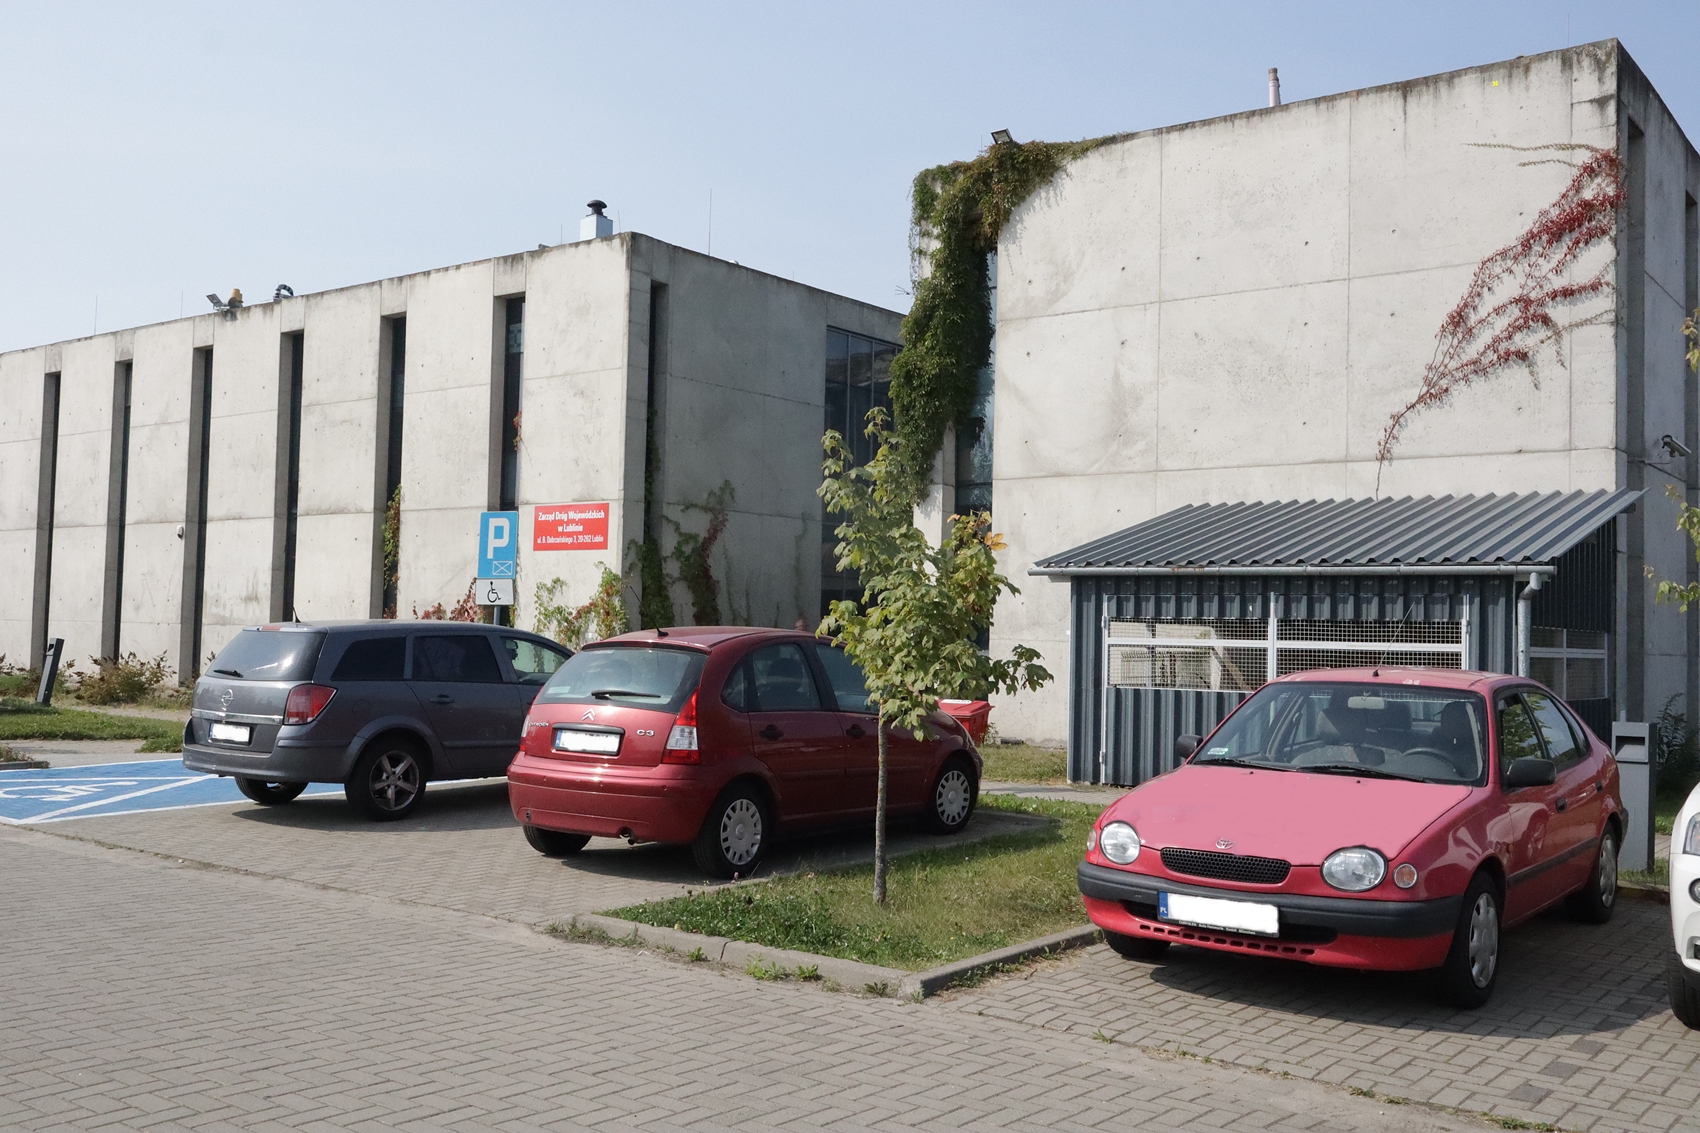 Zdjęcie przedstawia budynek Lubelskiego Parku Naukowo Technologicznego, w którym swoją siedzibę ma Zarząd Dróg Wojewódzkich w Lublinie. Budynek wykonany jest w całości z szarego betonu. Z każdej strony znajdują się podłużne, wąskie okna. Przed budynkiem widzimy ustawione na parkingu samochody osobowe.